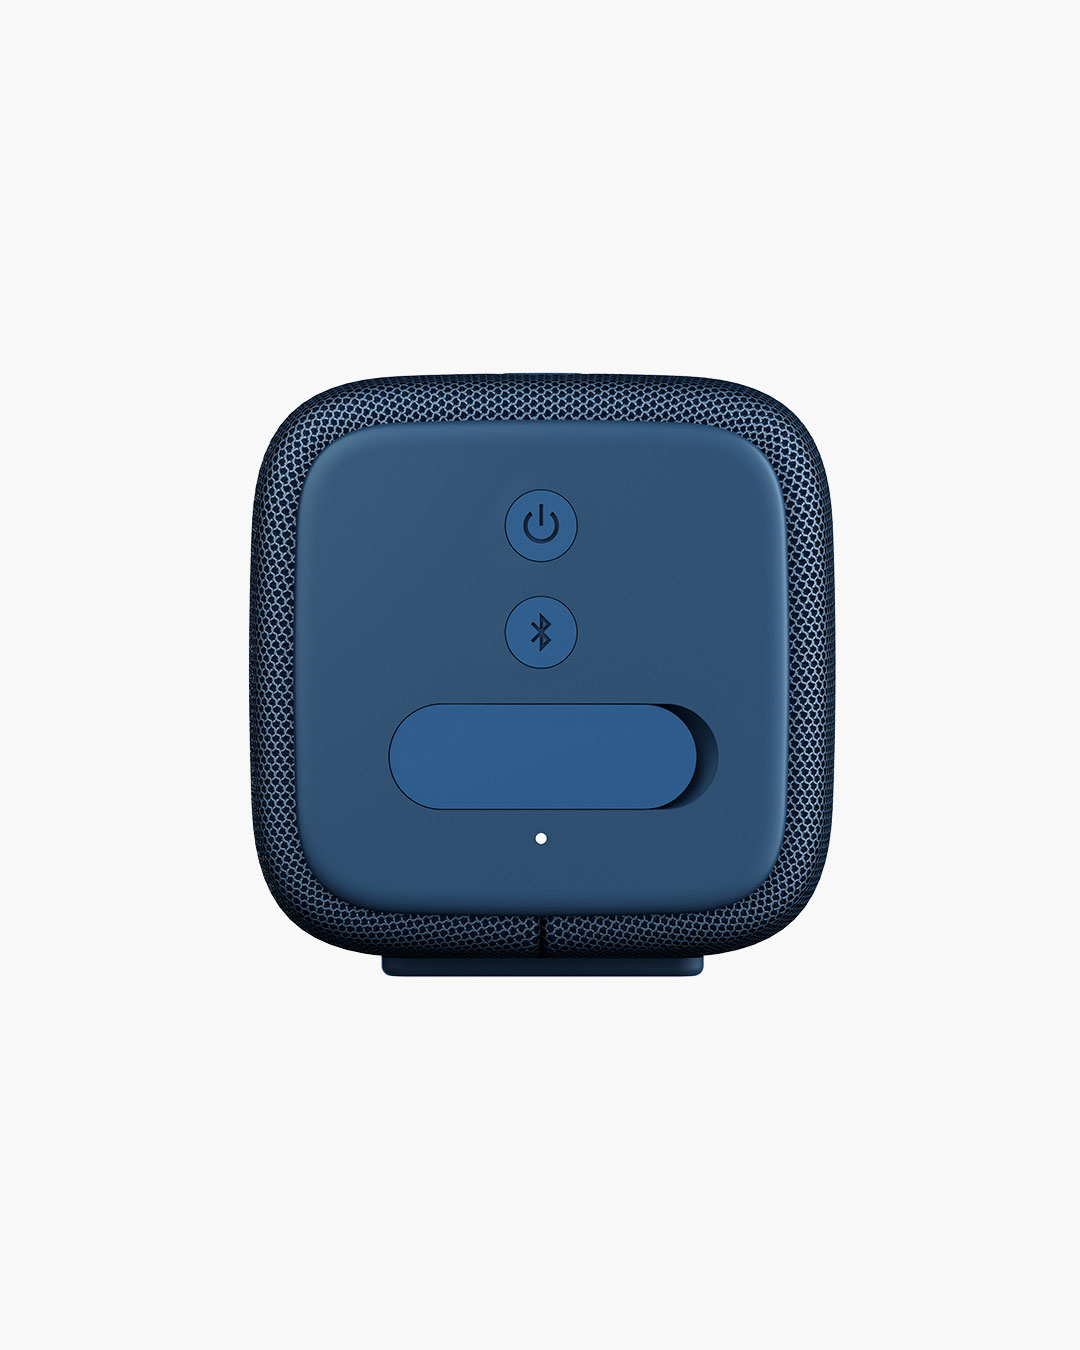 Fresh 'n Rebel - Rockbox Bold S - Wireless Bluetooth speaker - Steel Blue